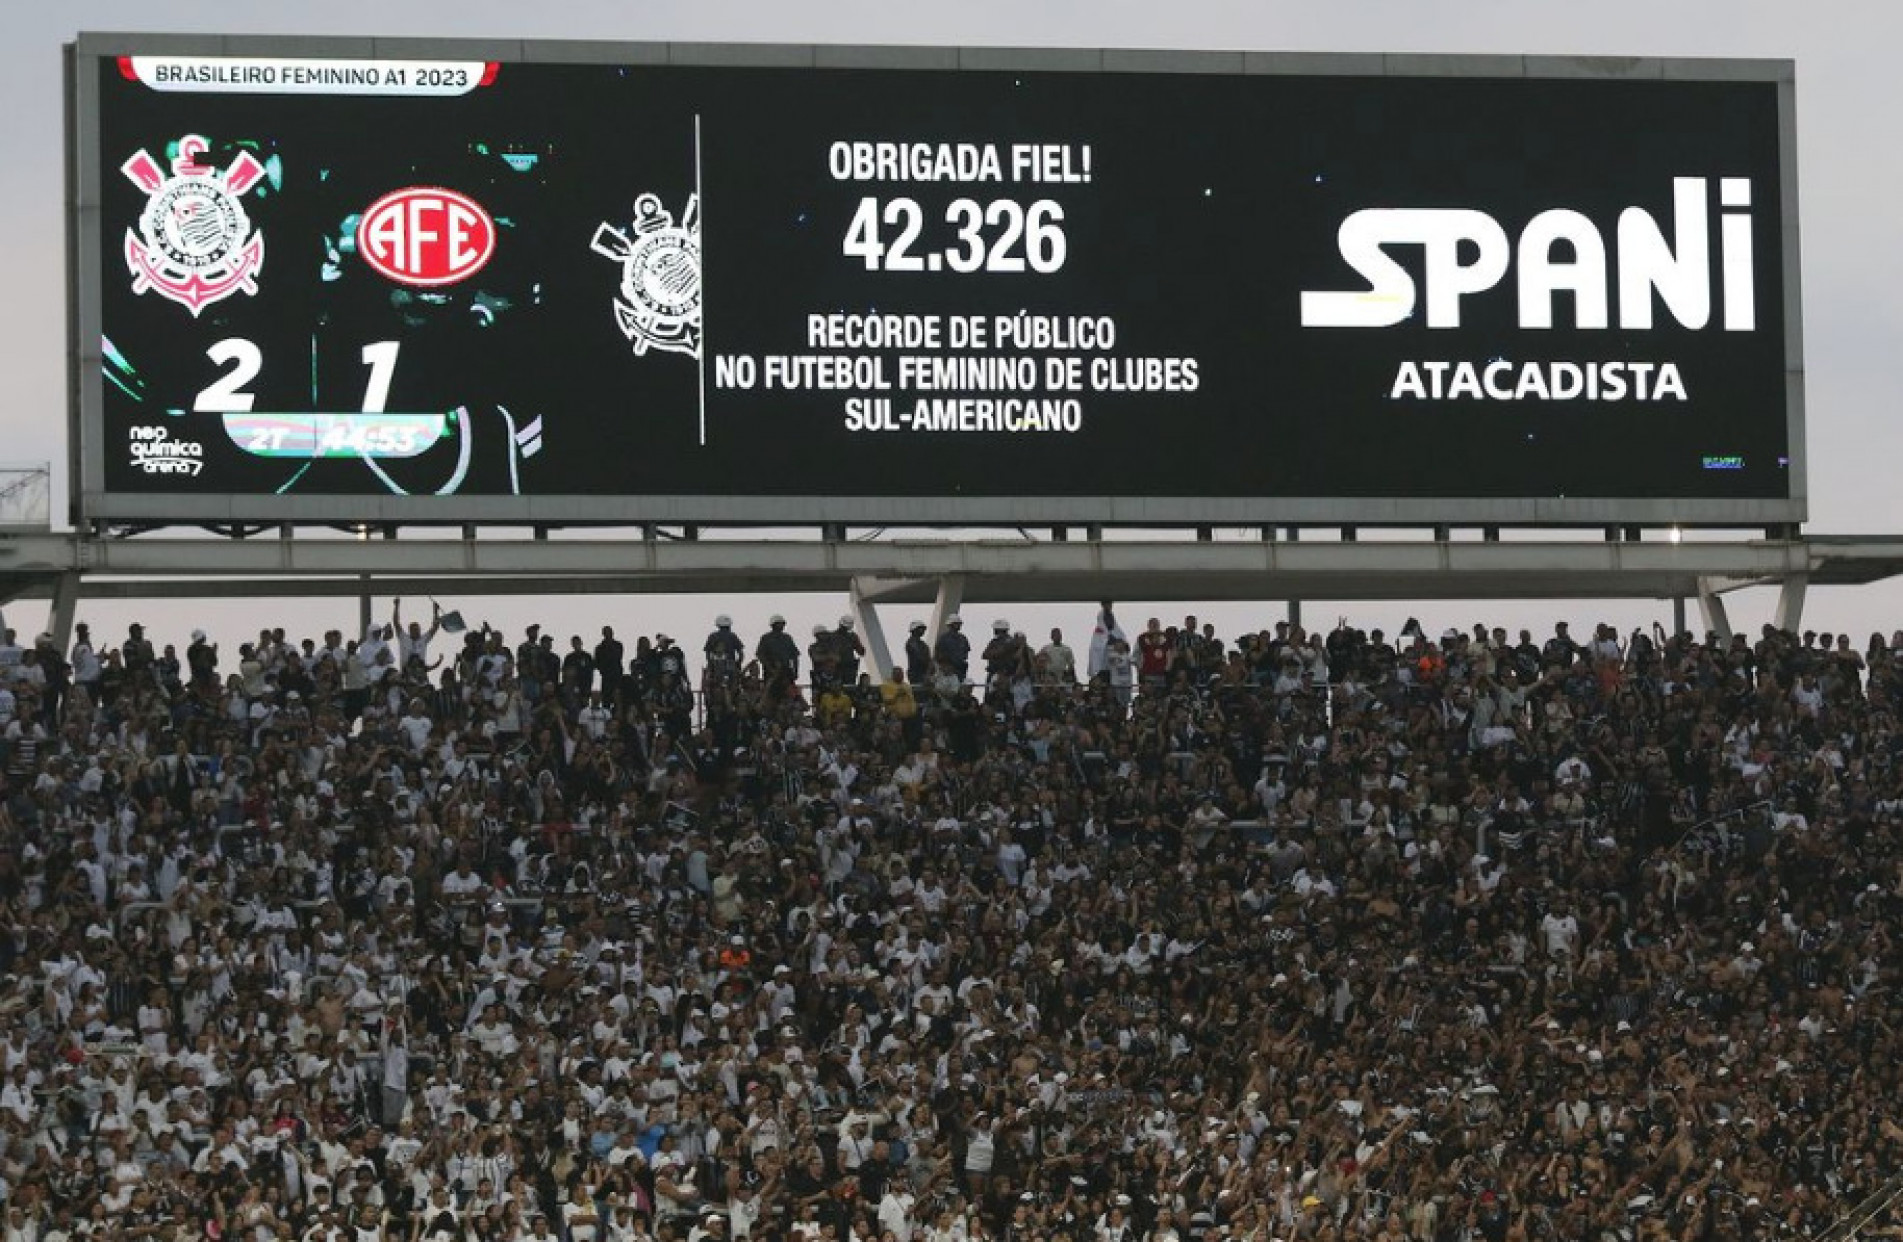 Corinthians divulga 39 mil ingressos vendidos para final do Brasileirão e  deve bater recorde de público do futebol feminino no país - ESPN